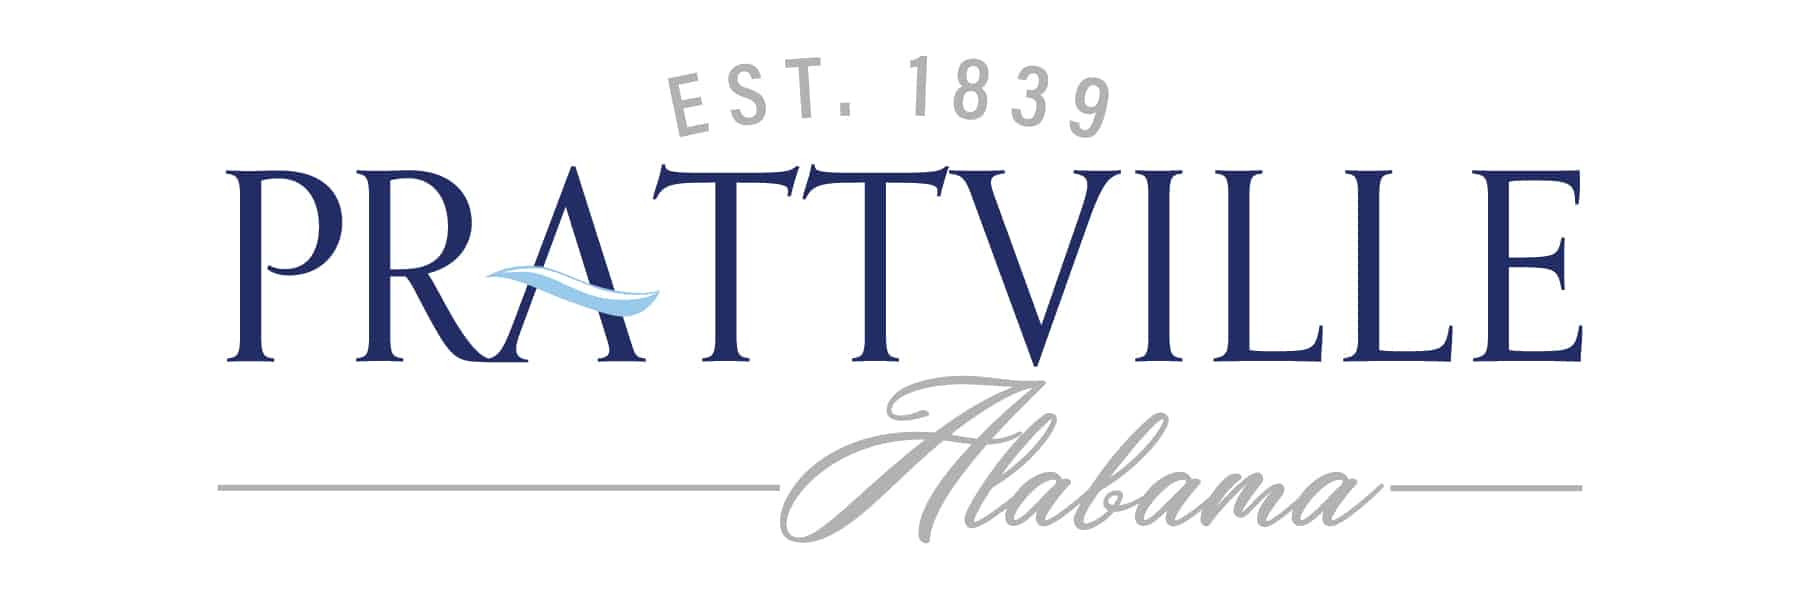 City of Prattville logo